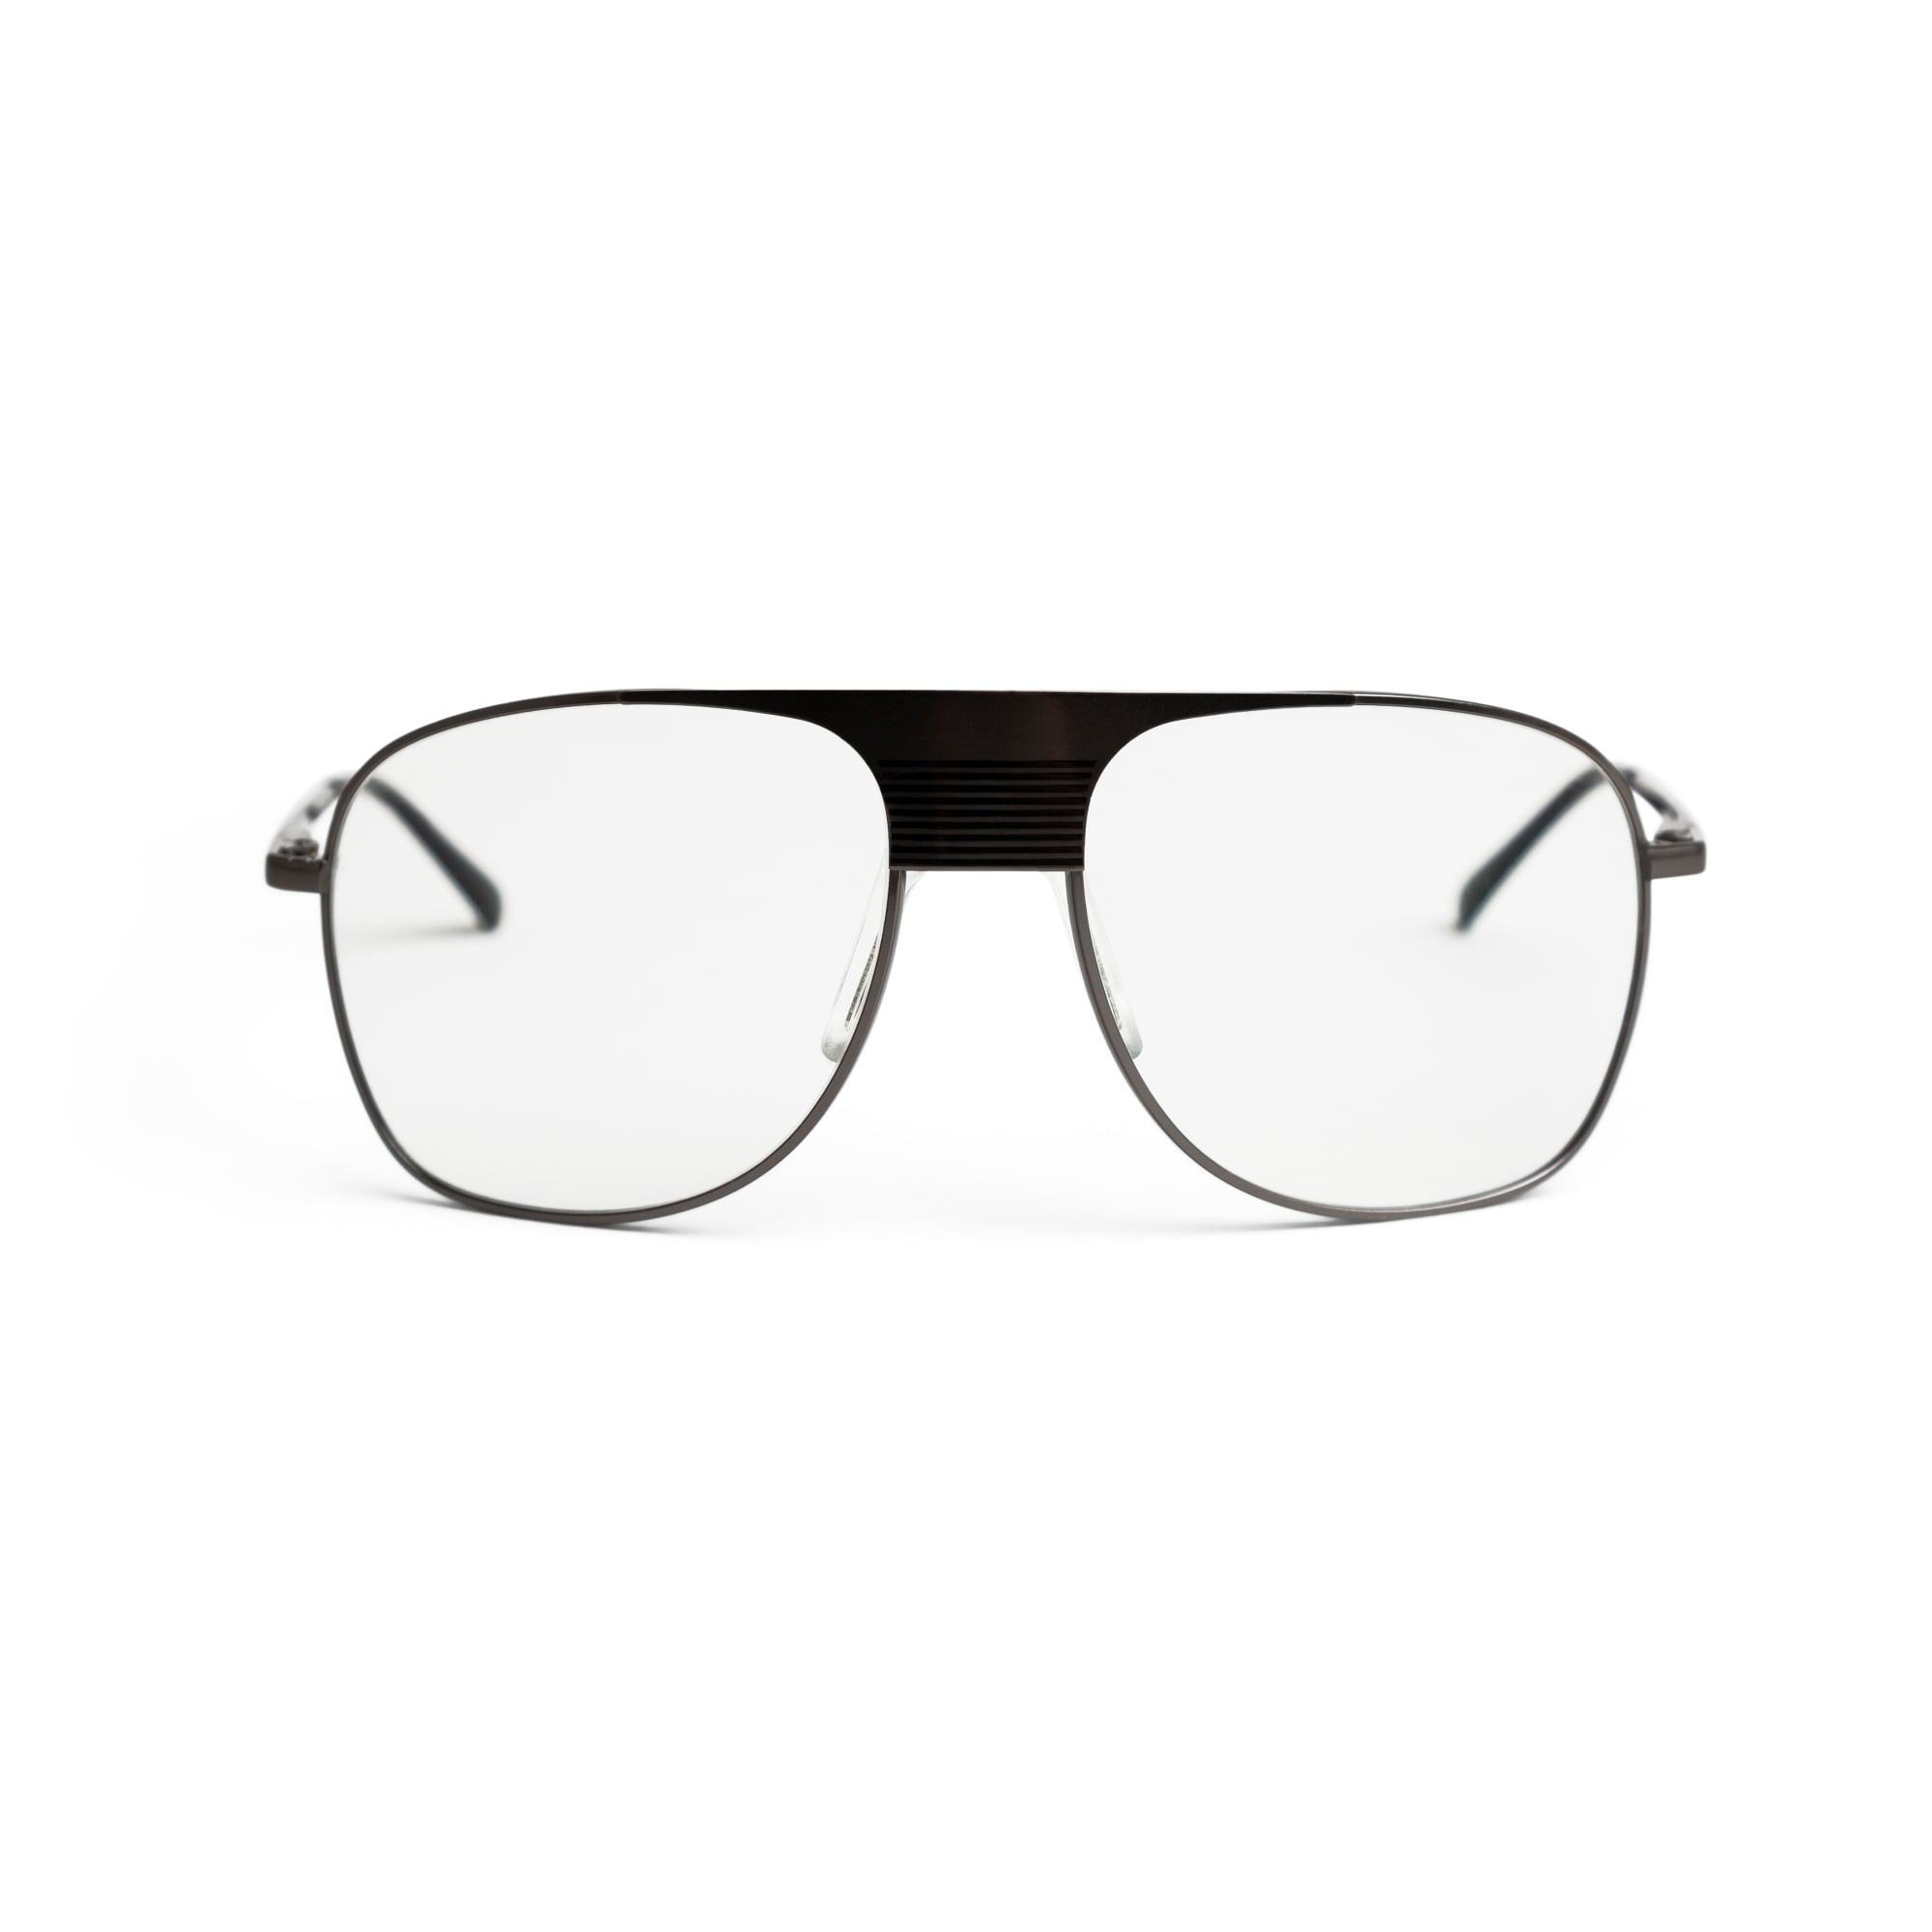 UK Trotting Glasses, Nova 4 -malli